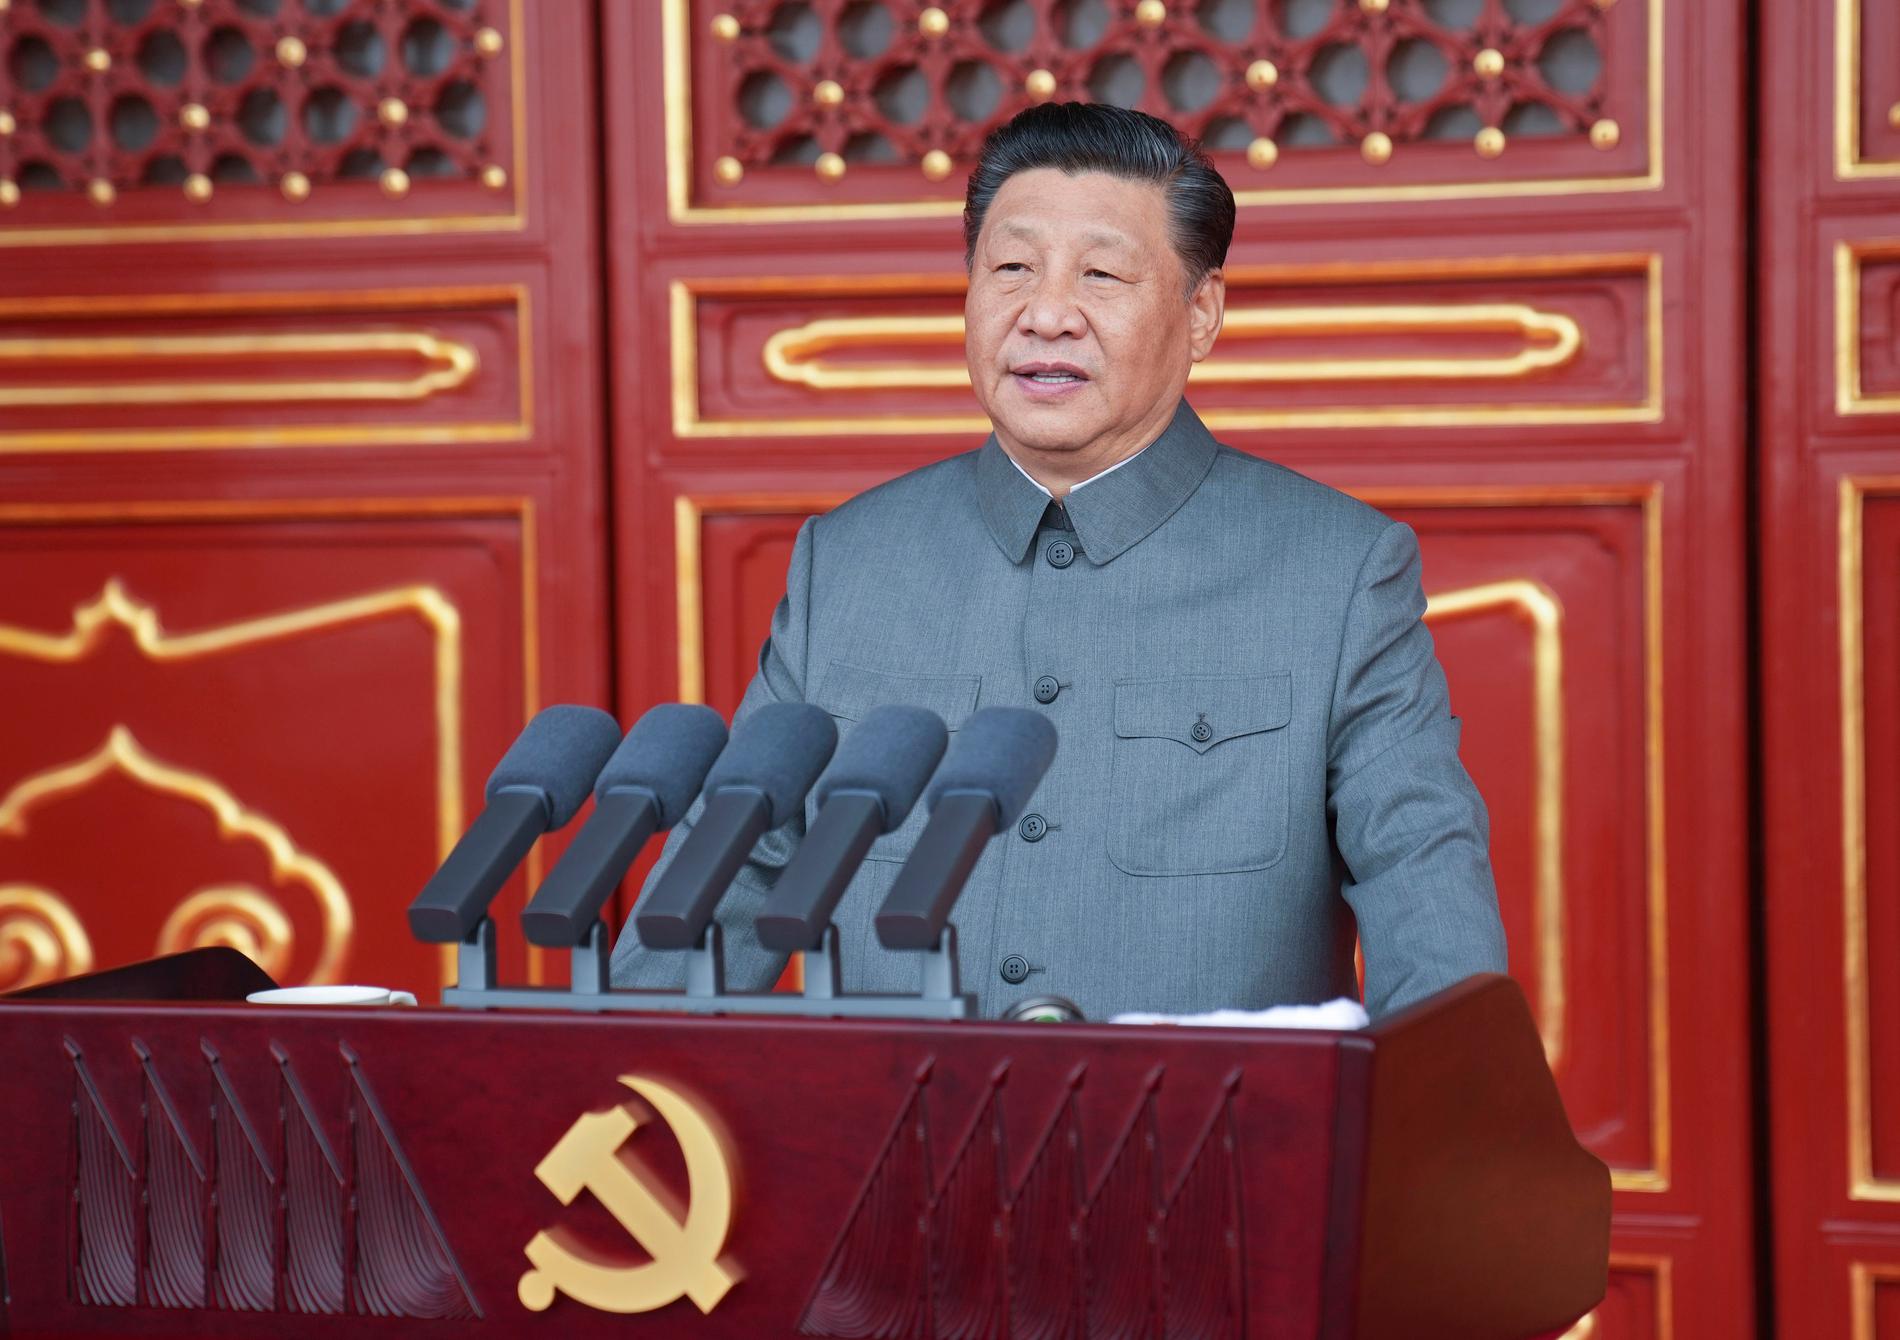 Kinas ledare Xi Jinping. Kinas självförtroende som stormakt växer hela tiden, skriver Wolfgang Hansson.